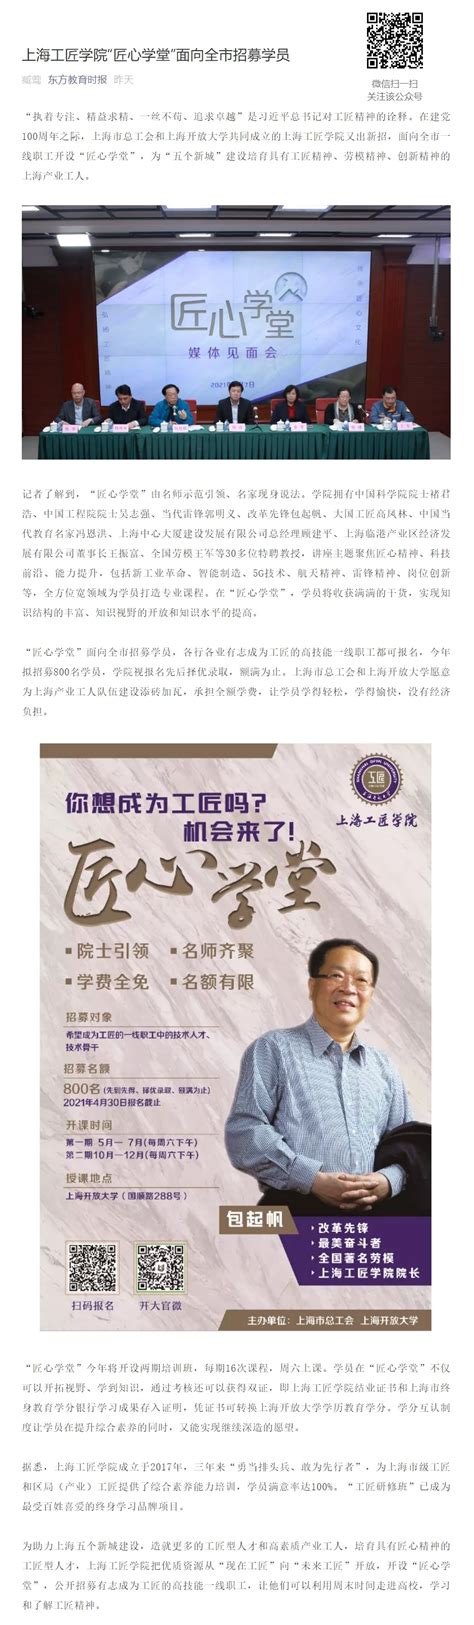 东方教育时报公众号：上海工匠学院“匠心学堂”面向全市招募学员